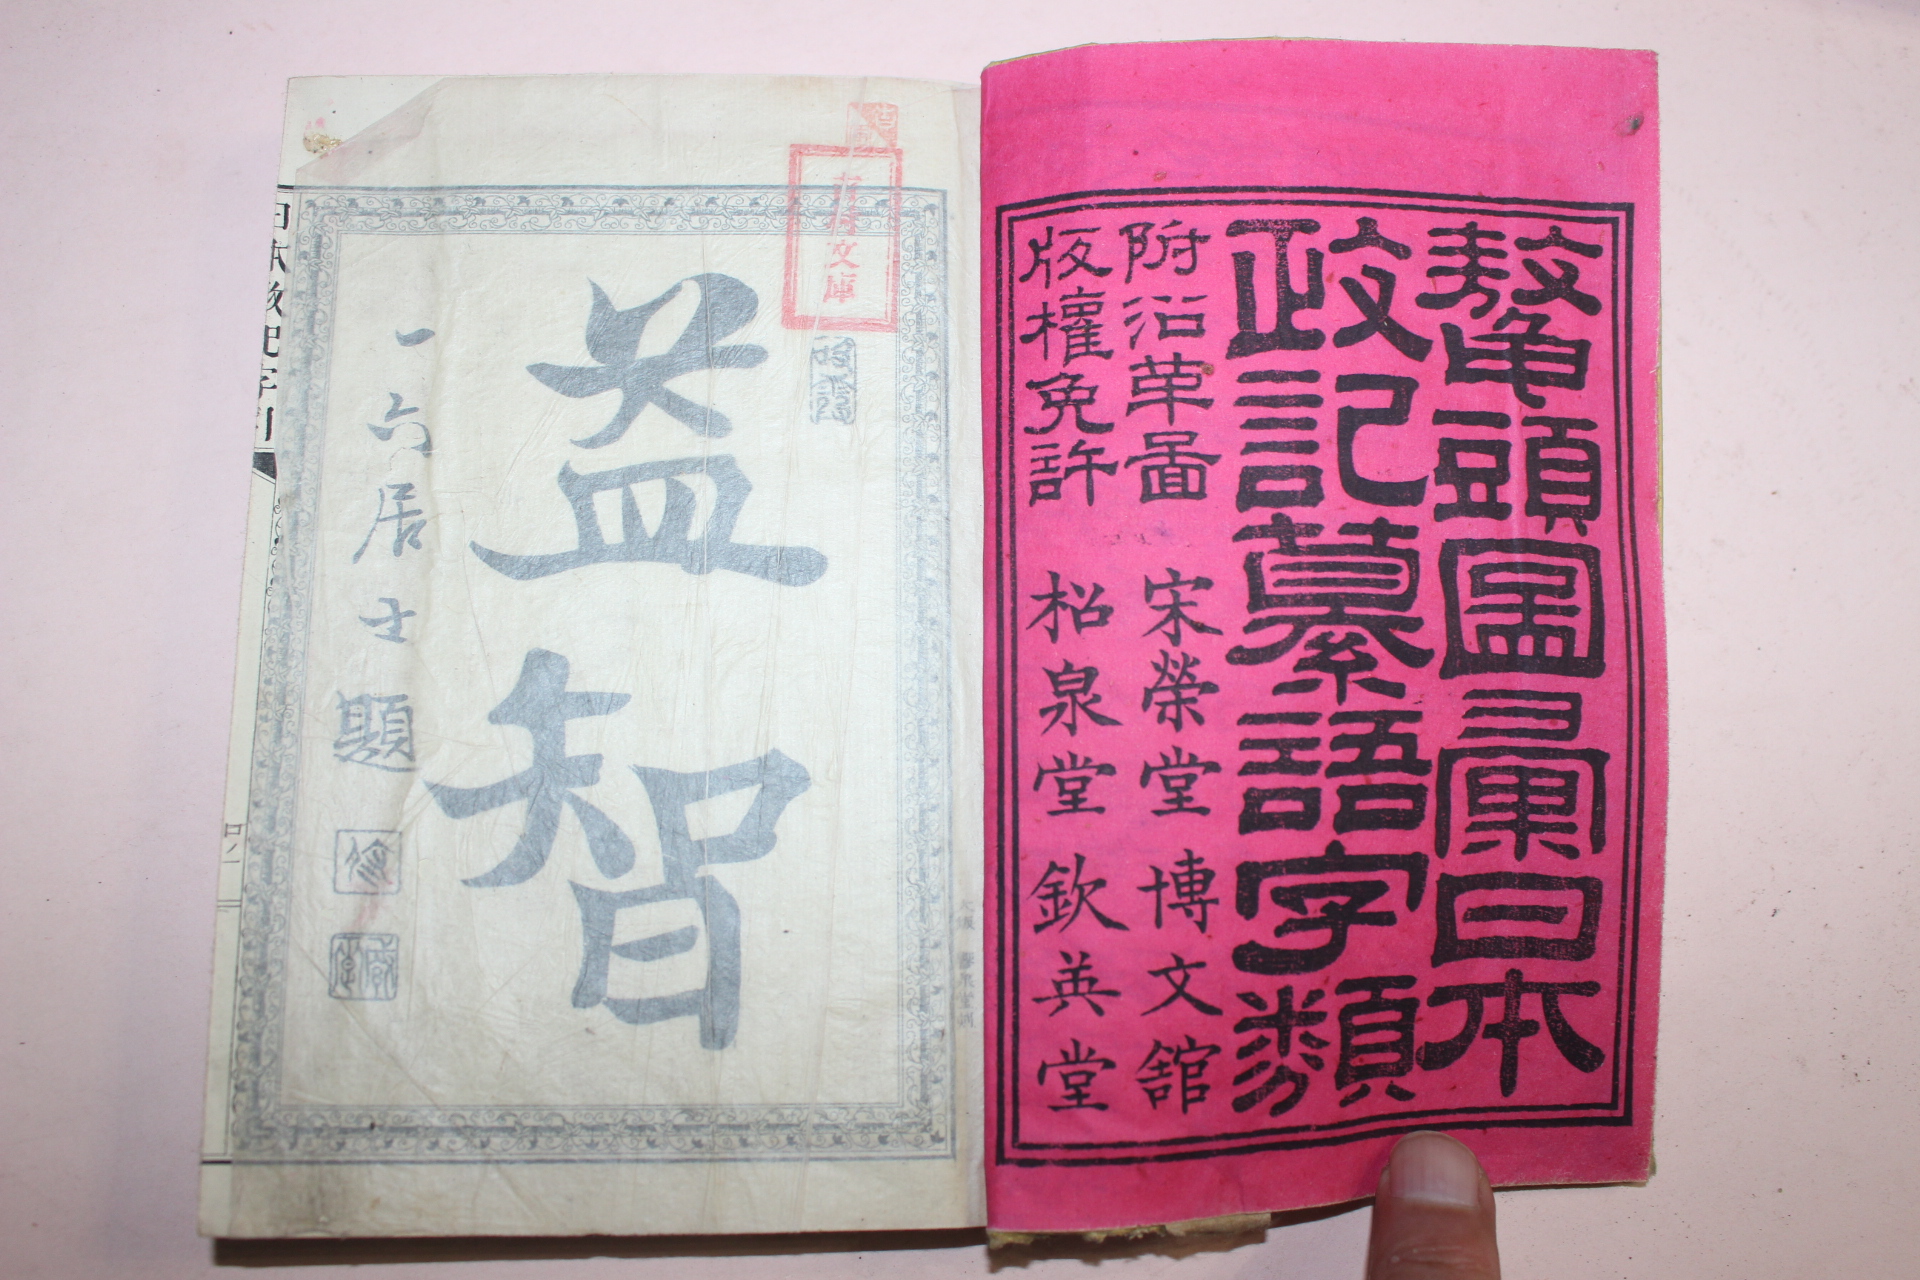 1885년(명치18년) 일본간행 일본정기찬어자류(日本政記纂語字類) 2책